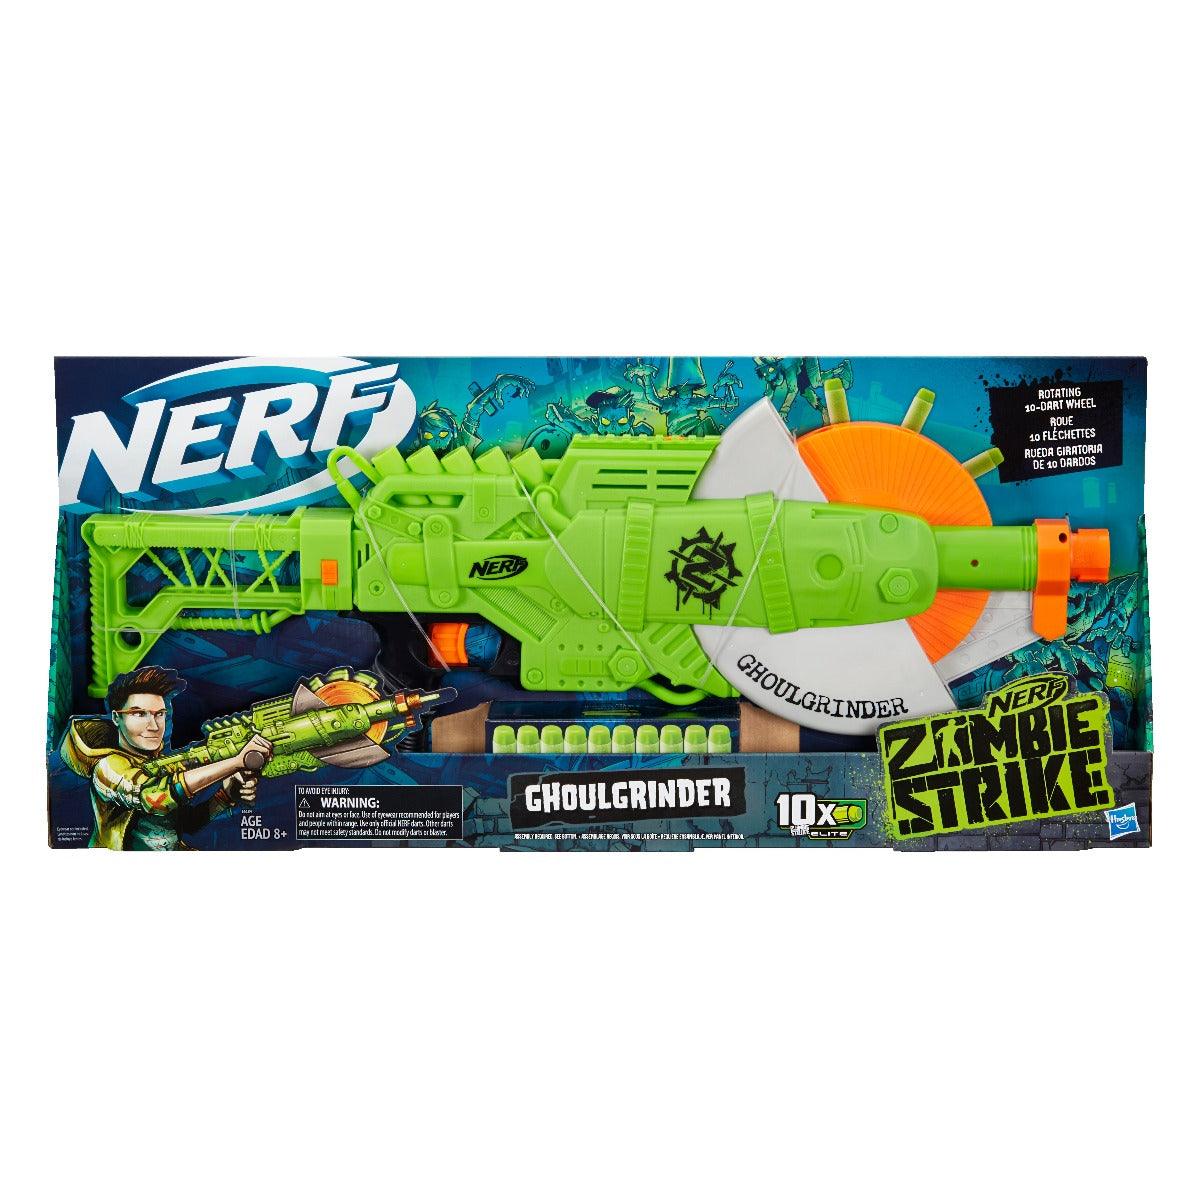 Nerf Zombie Strike Ghoulgrinder Blaster -- Rotating 10-Dart Wheel, 10 Official Nerf Zombie Strike Elite Darts -- For Kids, Teens, Adults